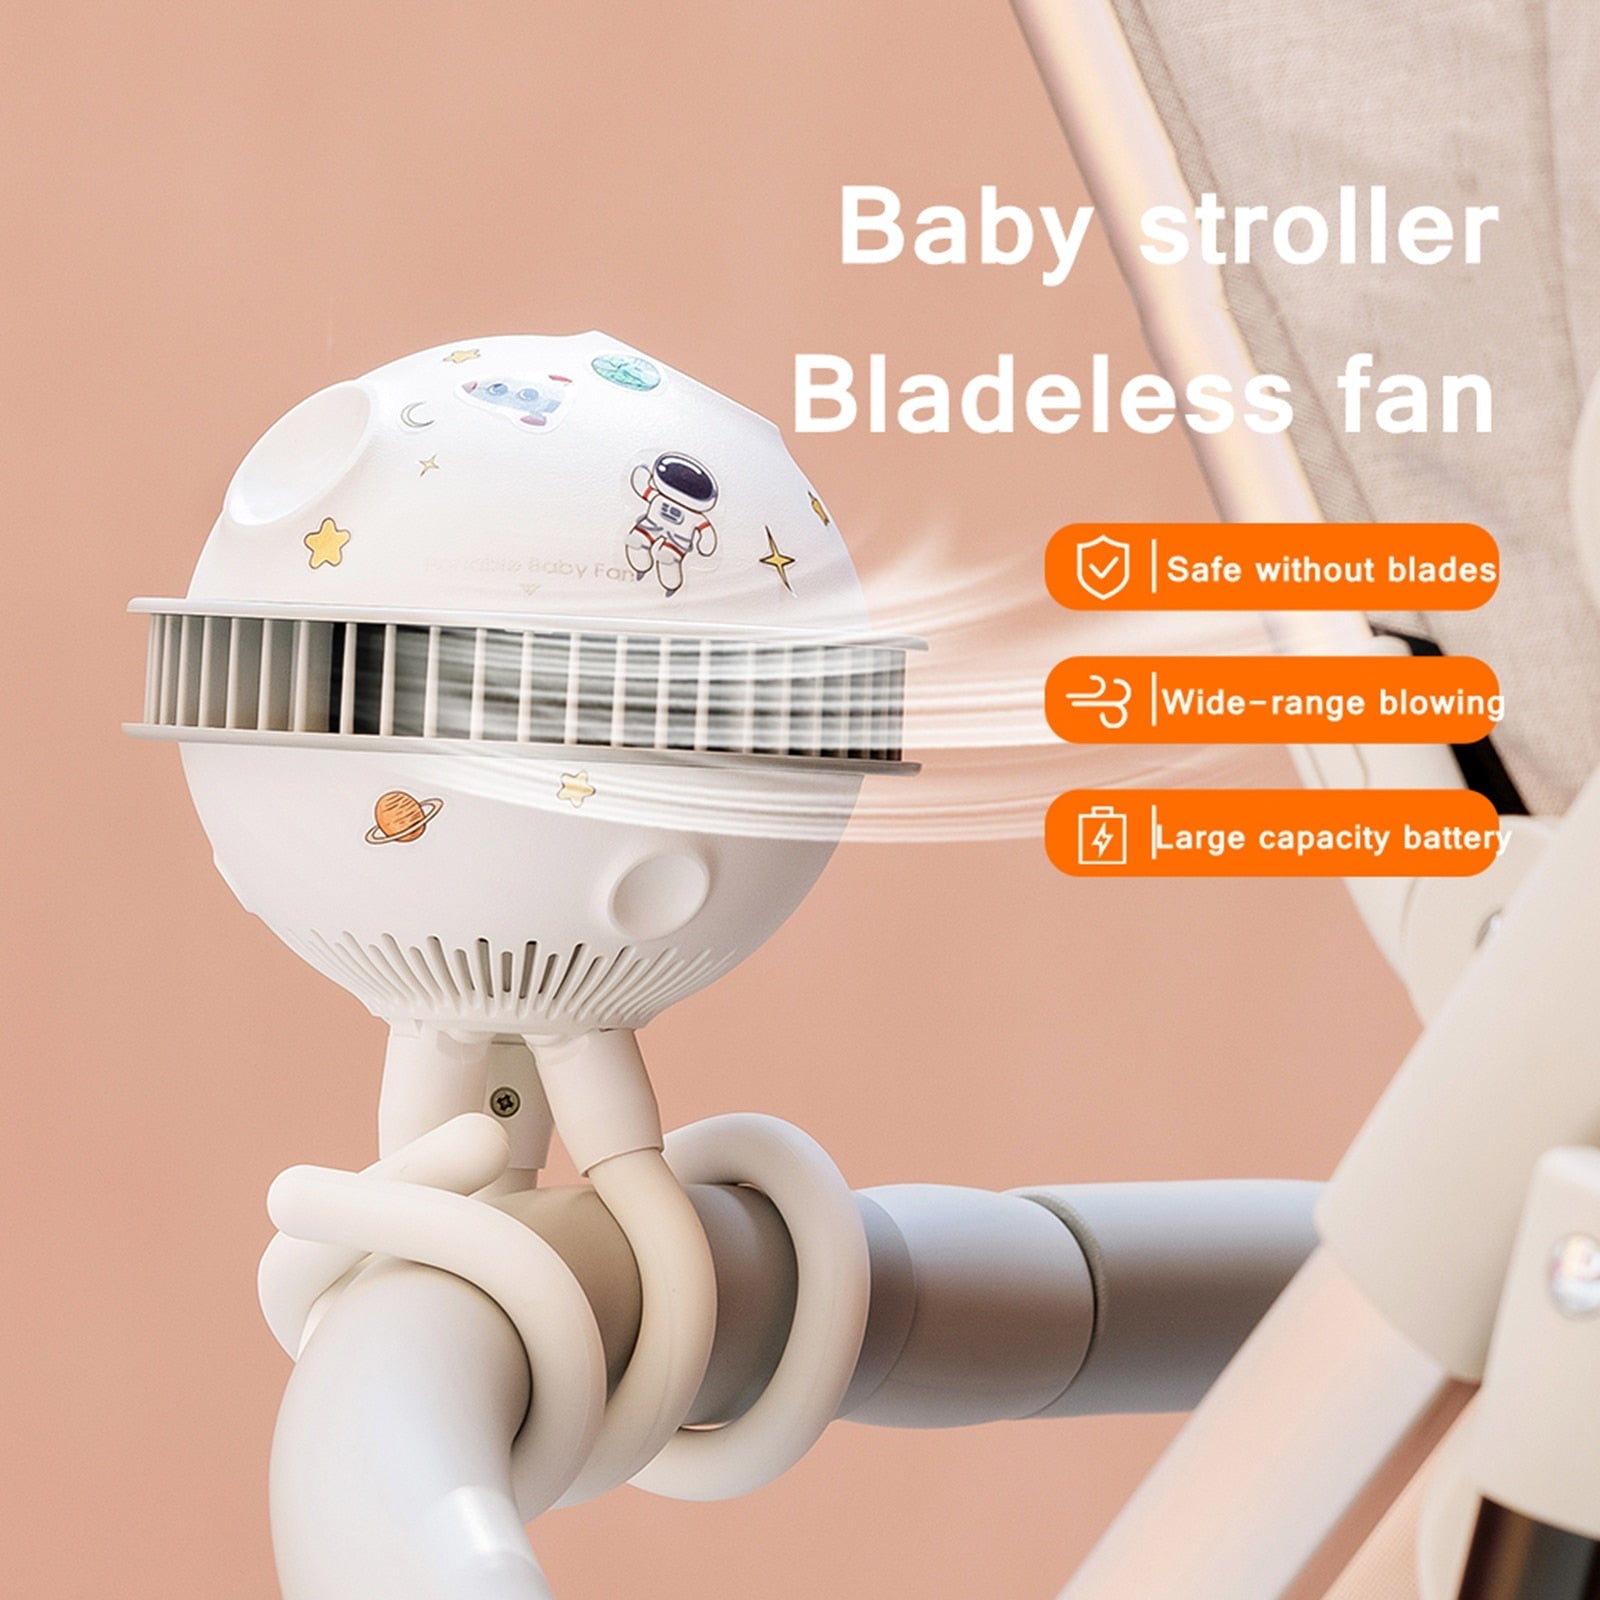 Baby Stroller Bladeless Fan